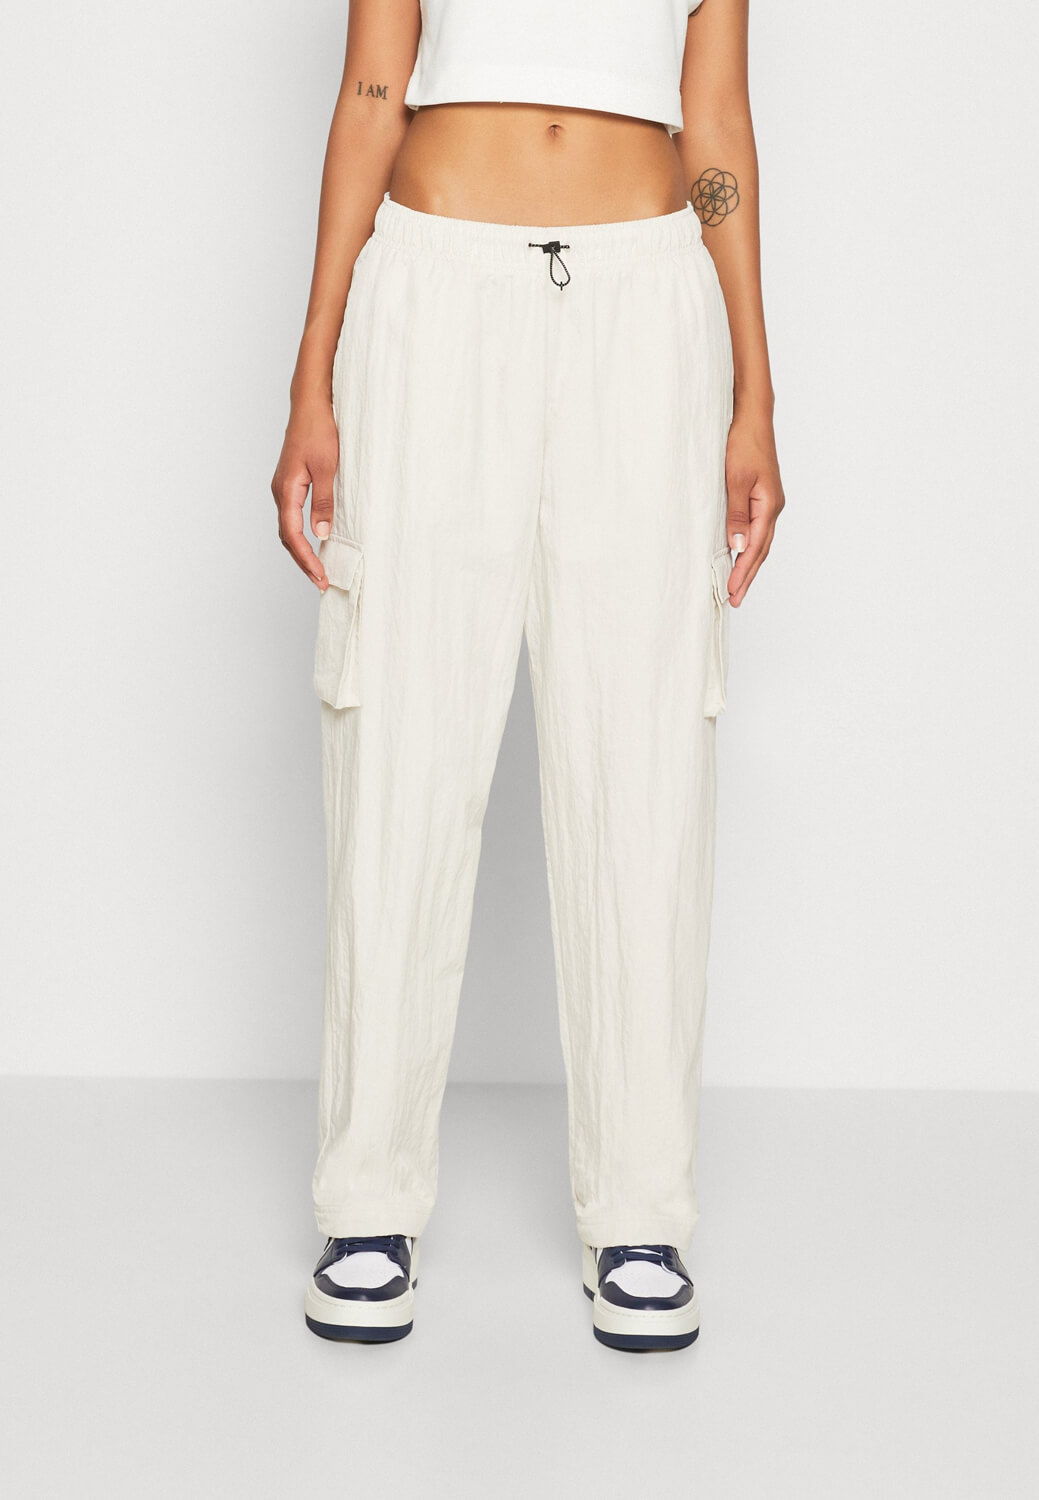 Брюки Nike Sportswear Cargo, белый белые атласные брюки карго прямого кроя jdy